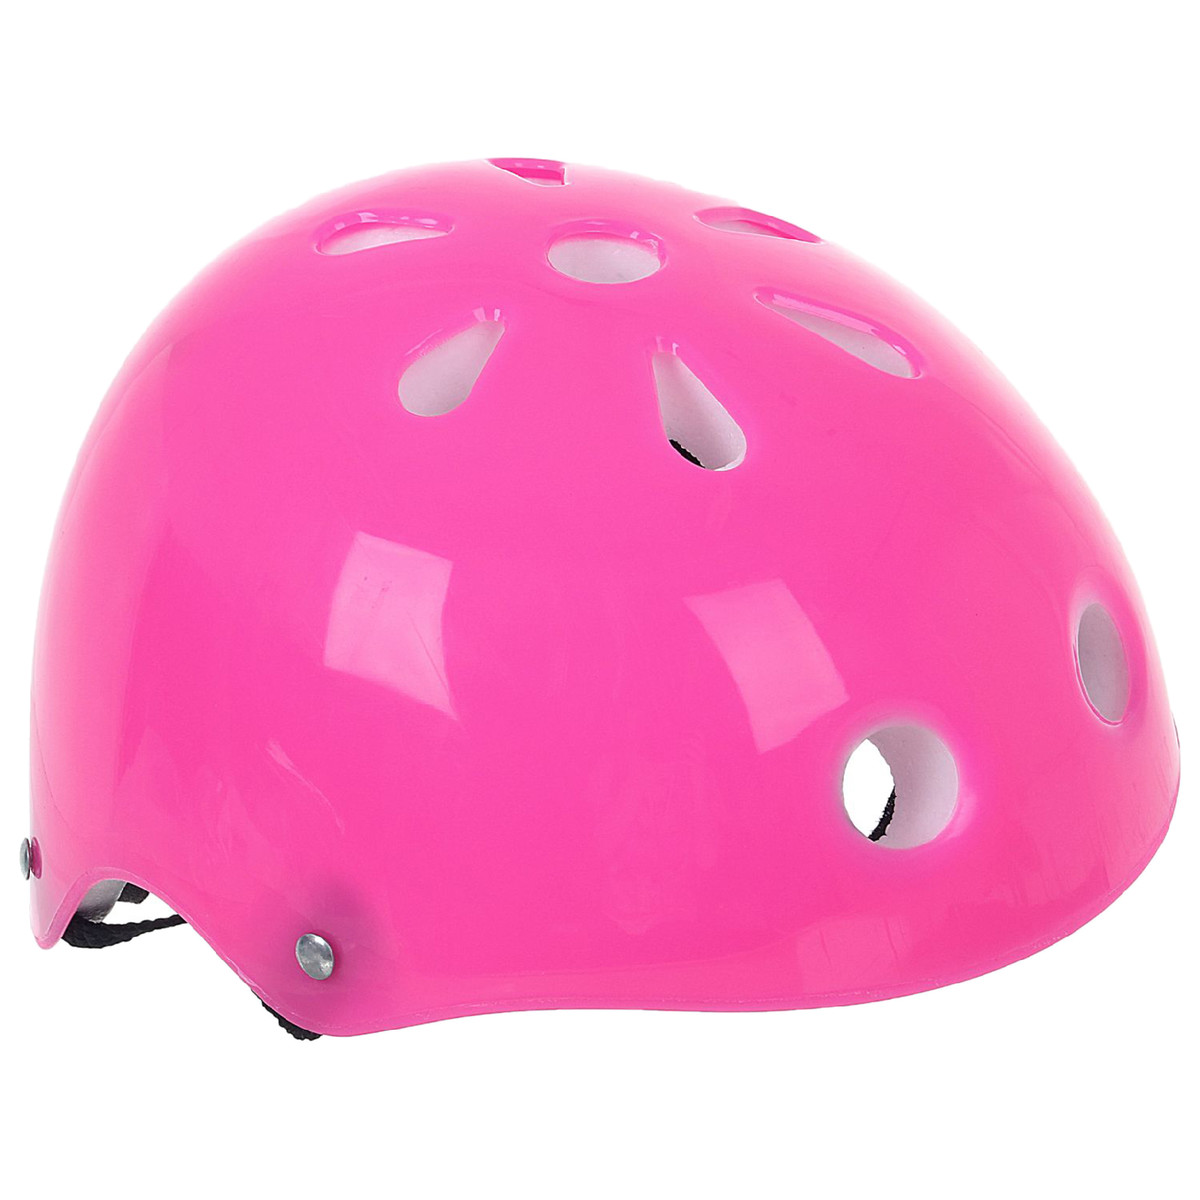 Шлем защитный детский onlytop ot-s507, обхват 55 см, цвет розовый шлем защитный с фломастерами wipeout neon pink l 8 розовый